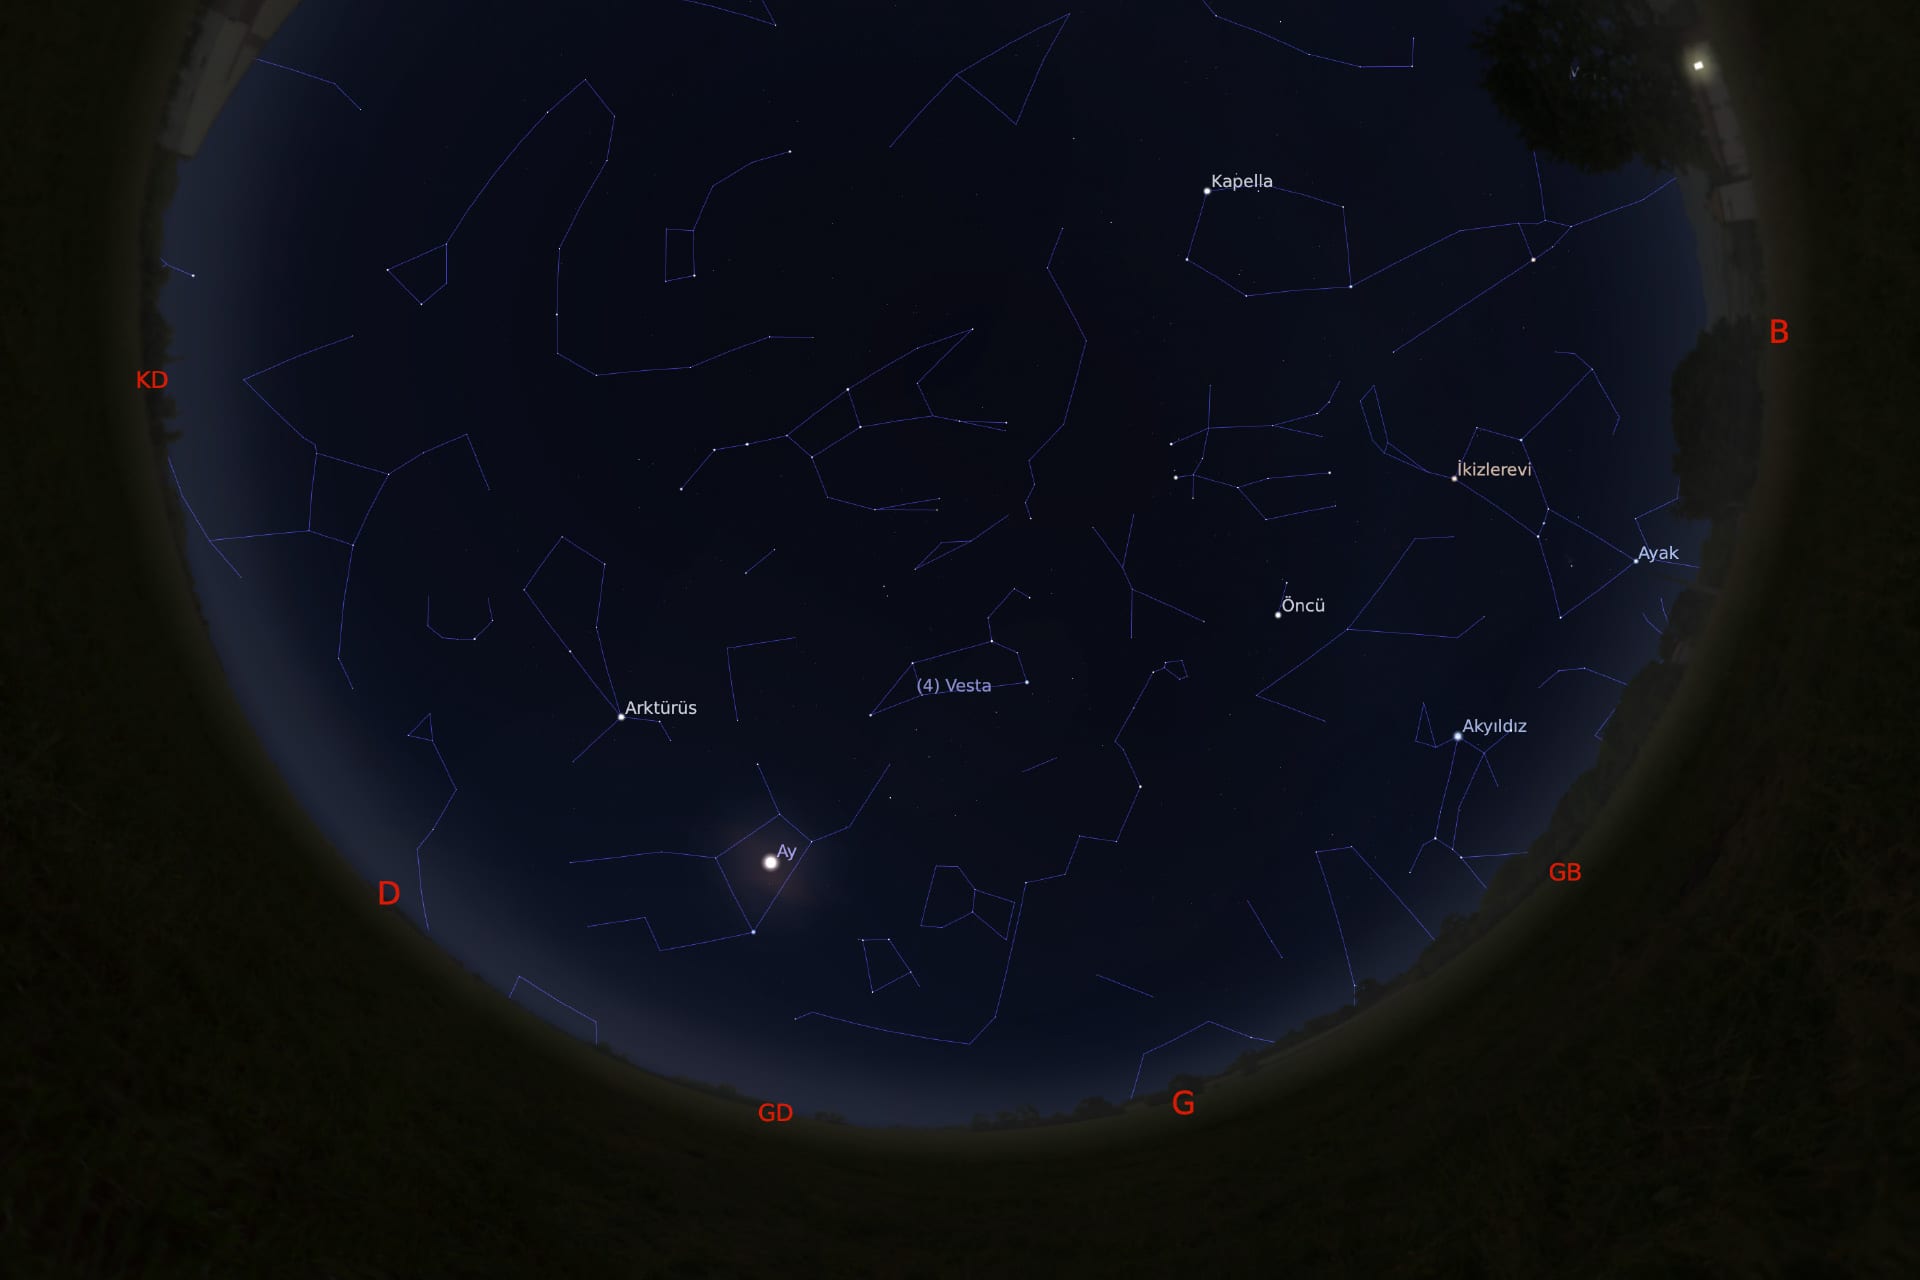 1 Mart 2021 - saat 00:30'daki gökyüzü görüntüsü